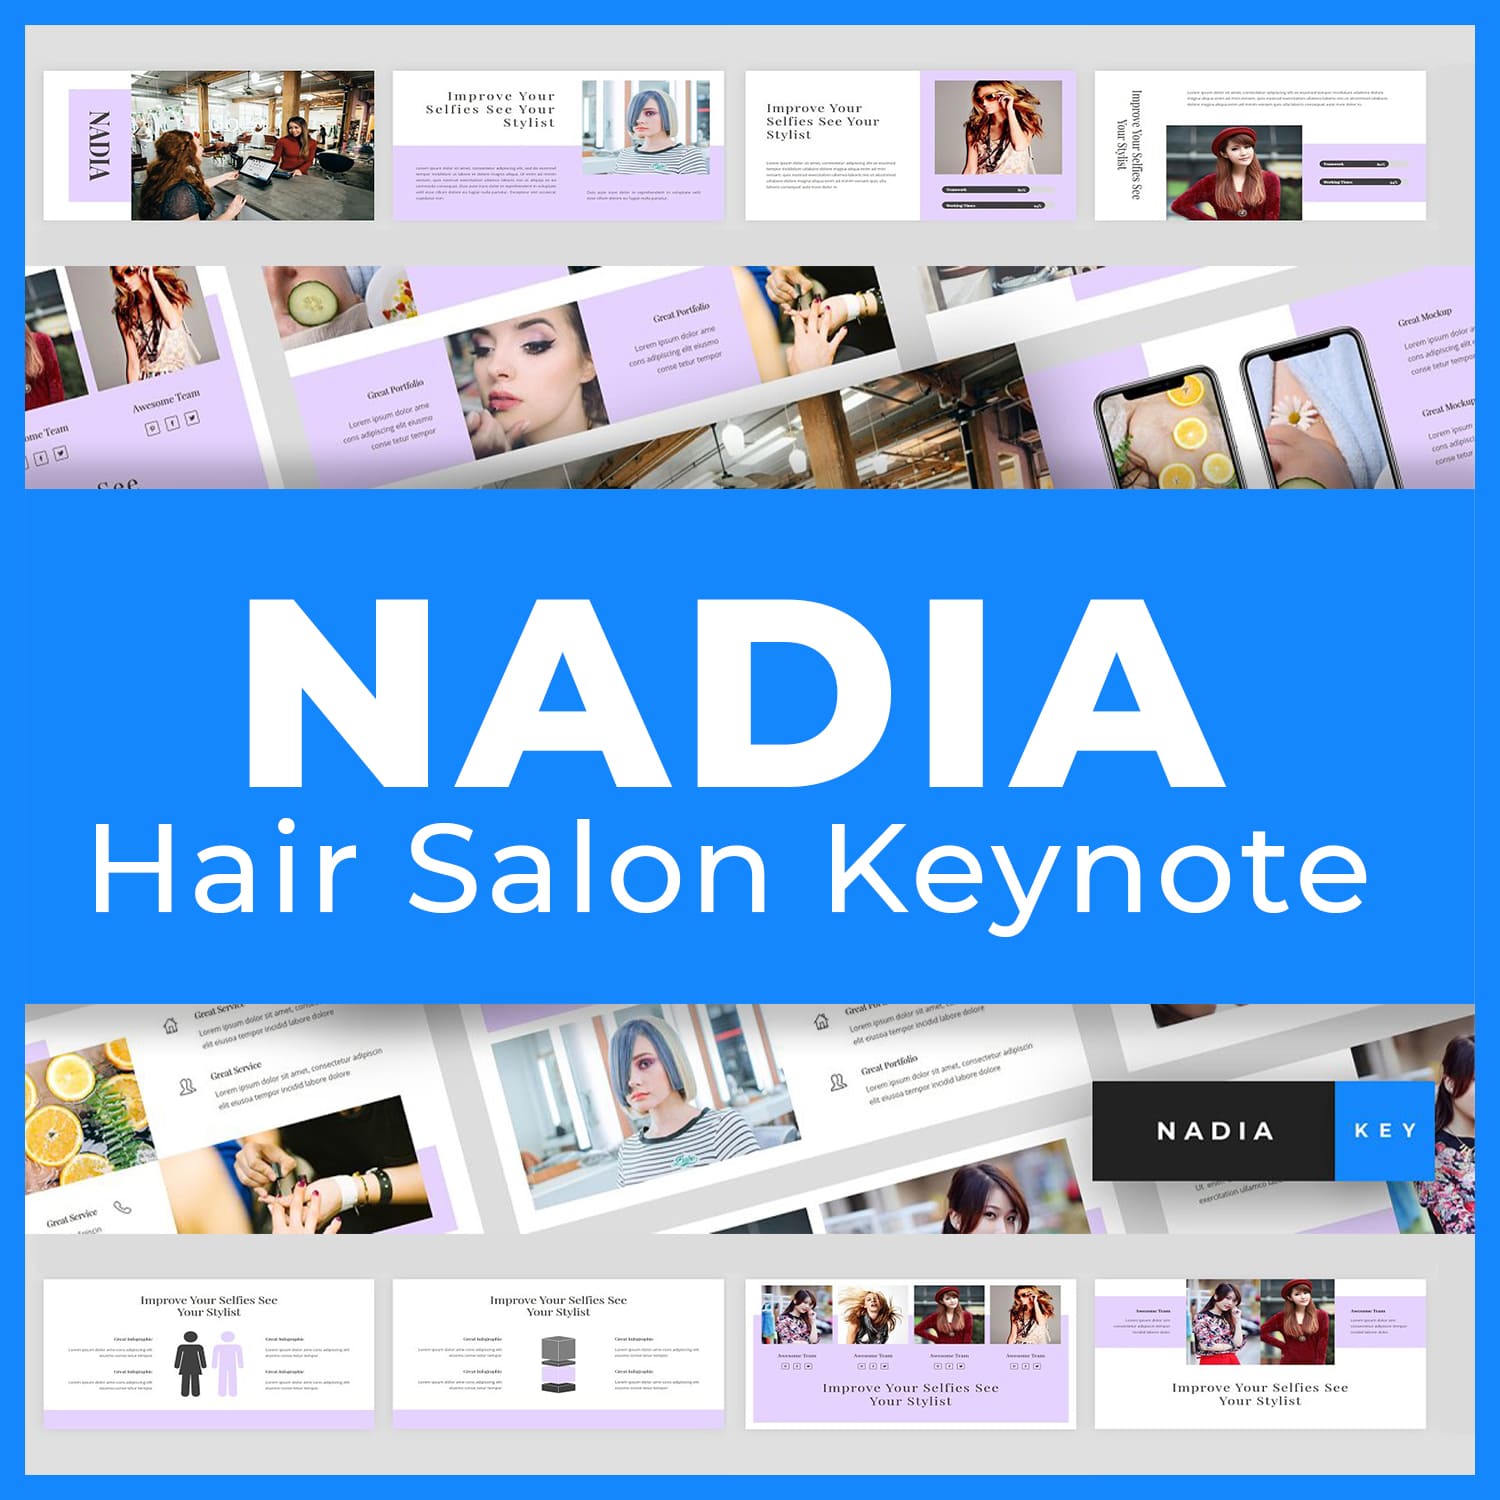 Nadia - Hair Salon Keynote main cover.